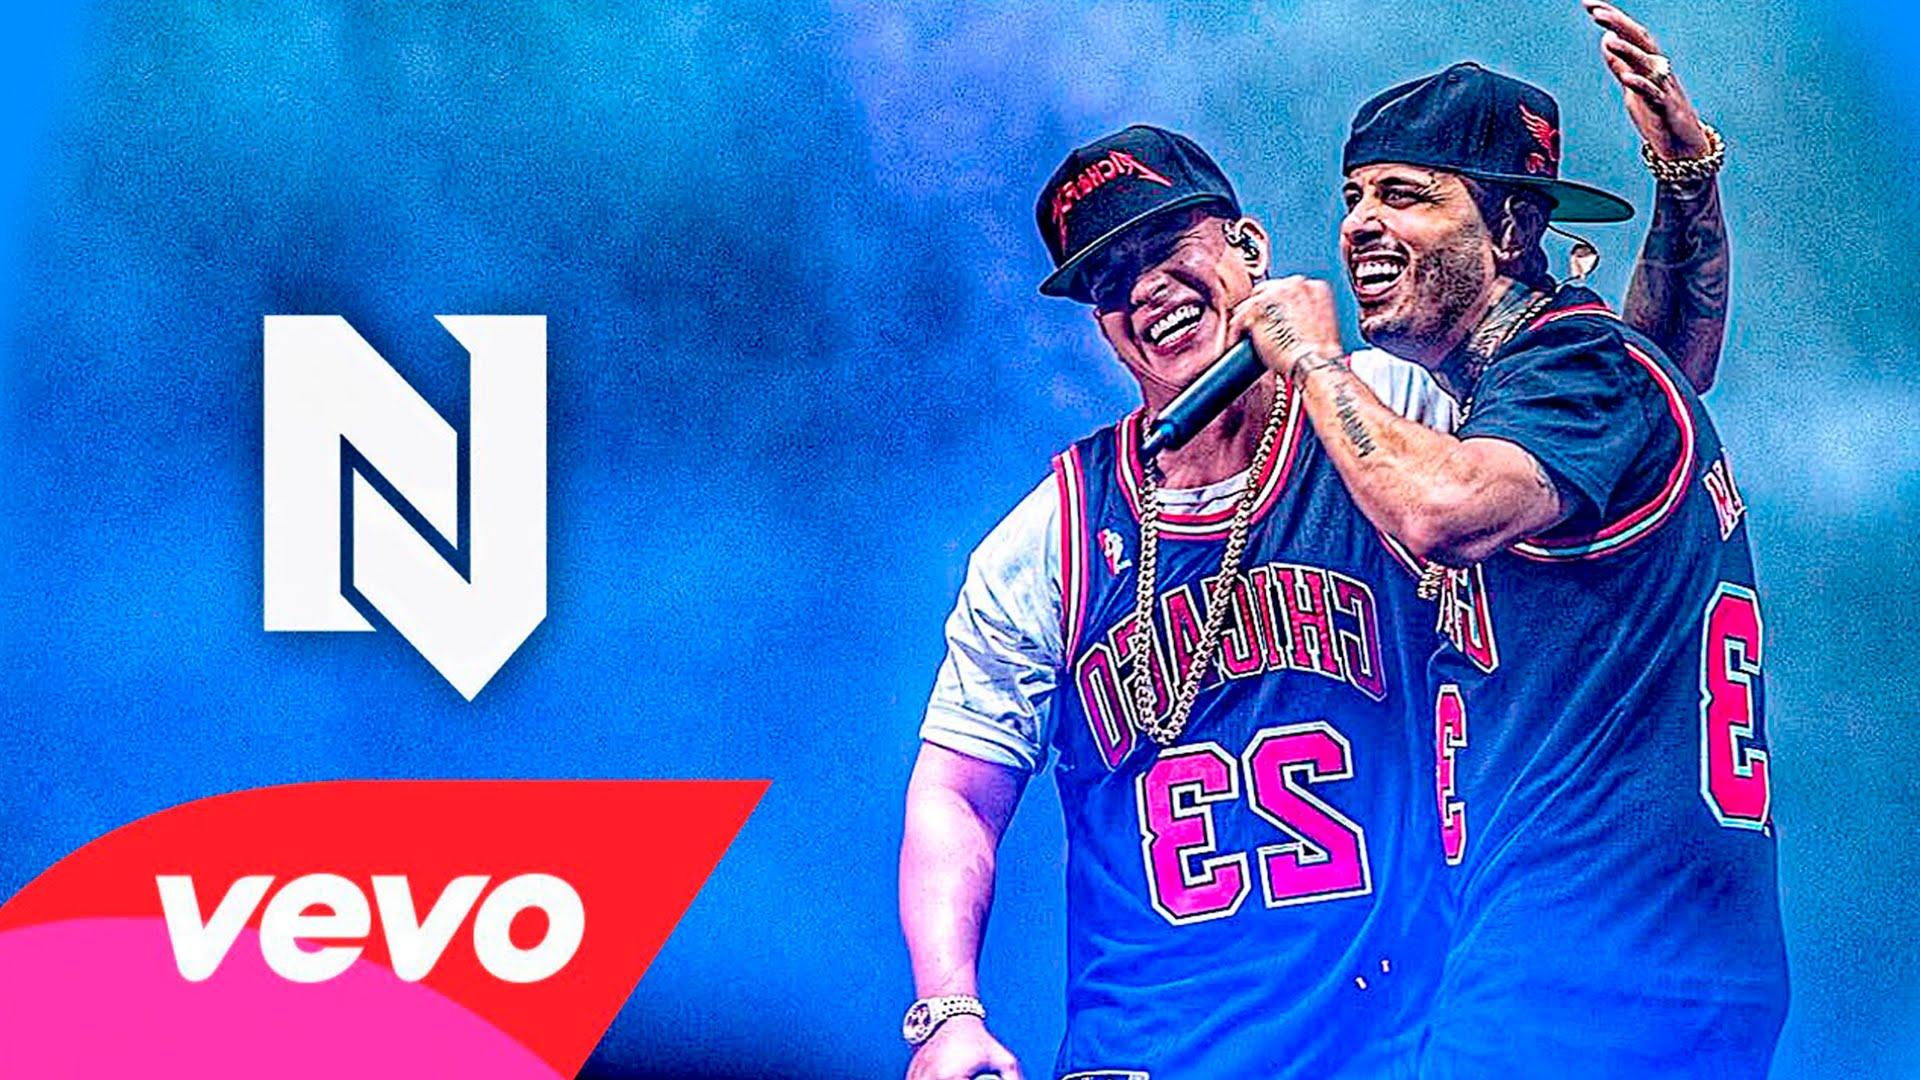 Nicky Jam Reggaeton 2015 lo mas nuevo, Ft Daddy Yankee, J balvin